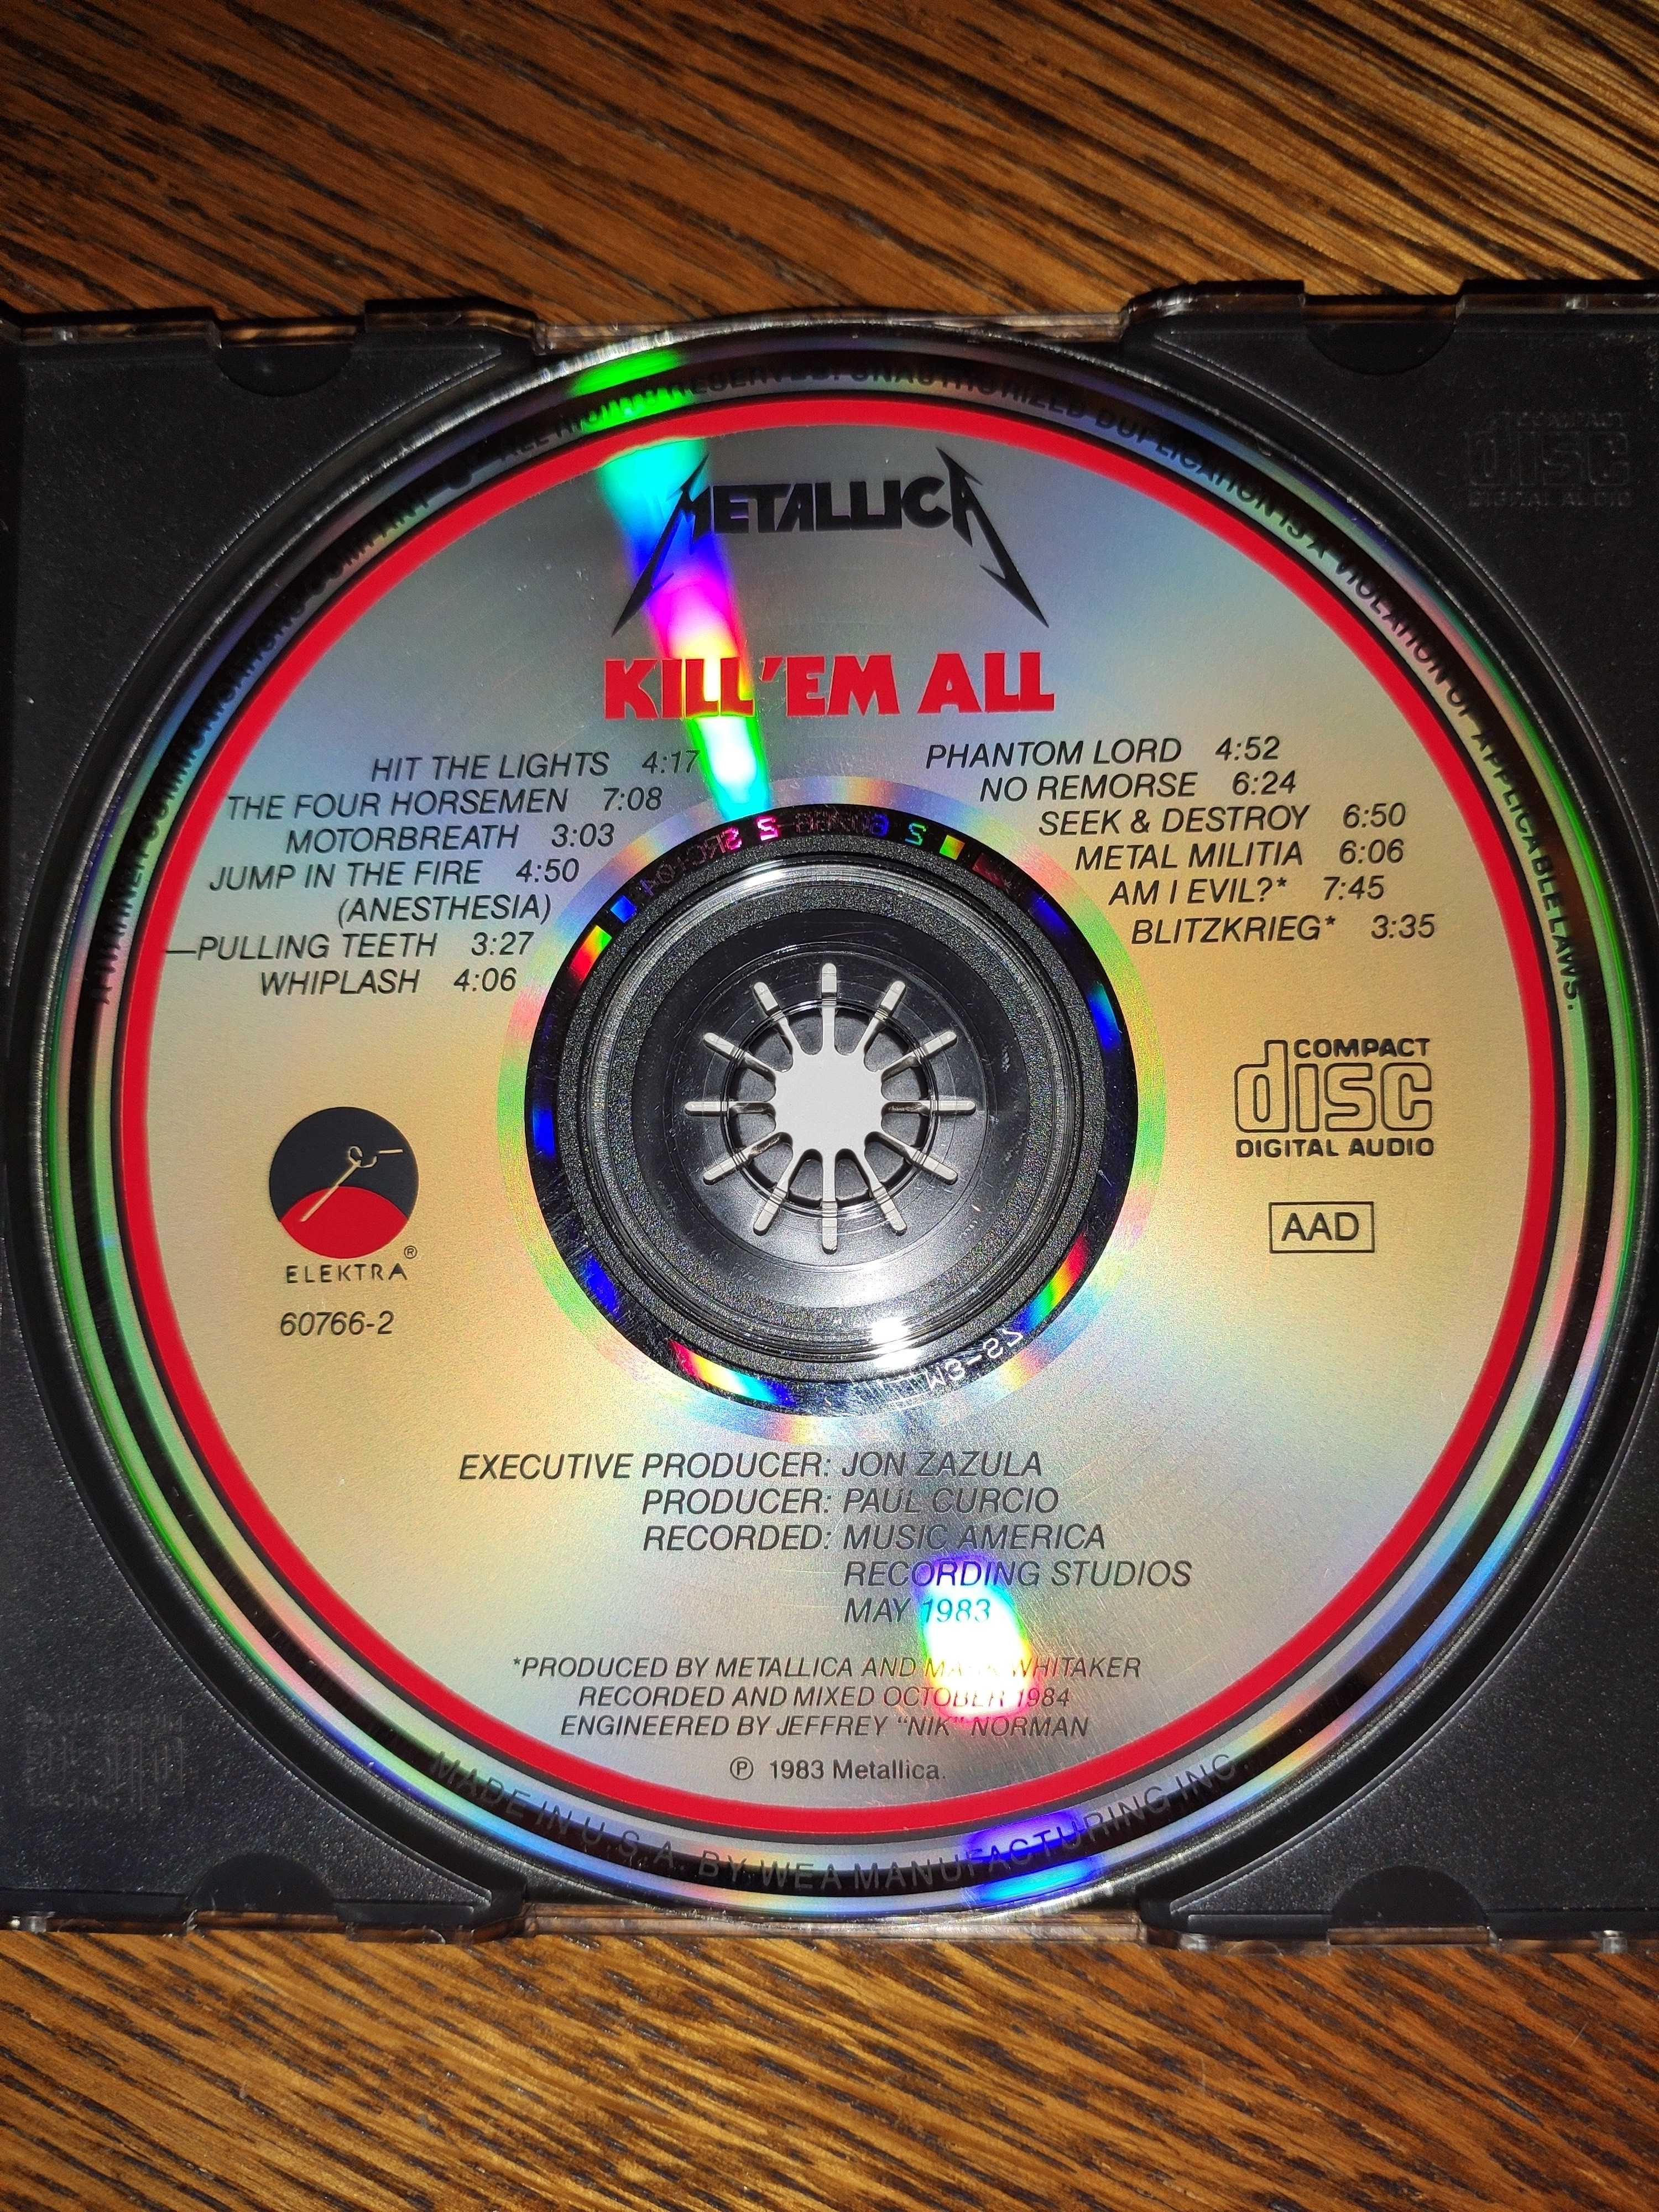 Metallica - Kill 'em all, CD 1988, Elektra, USA